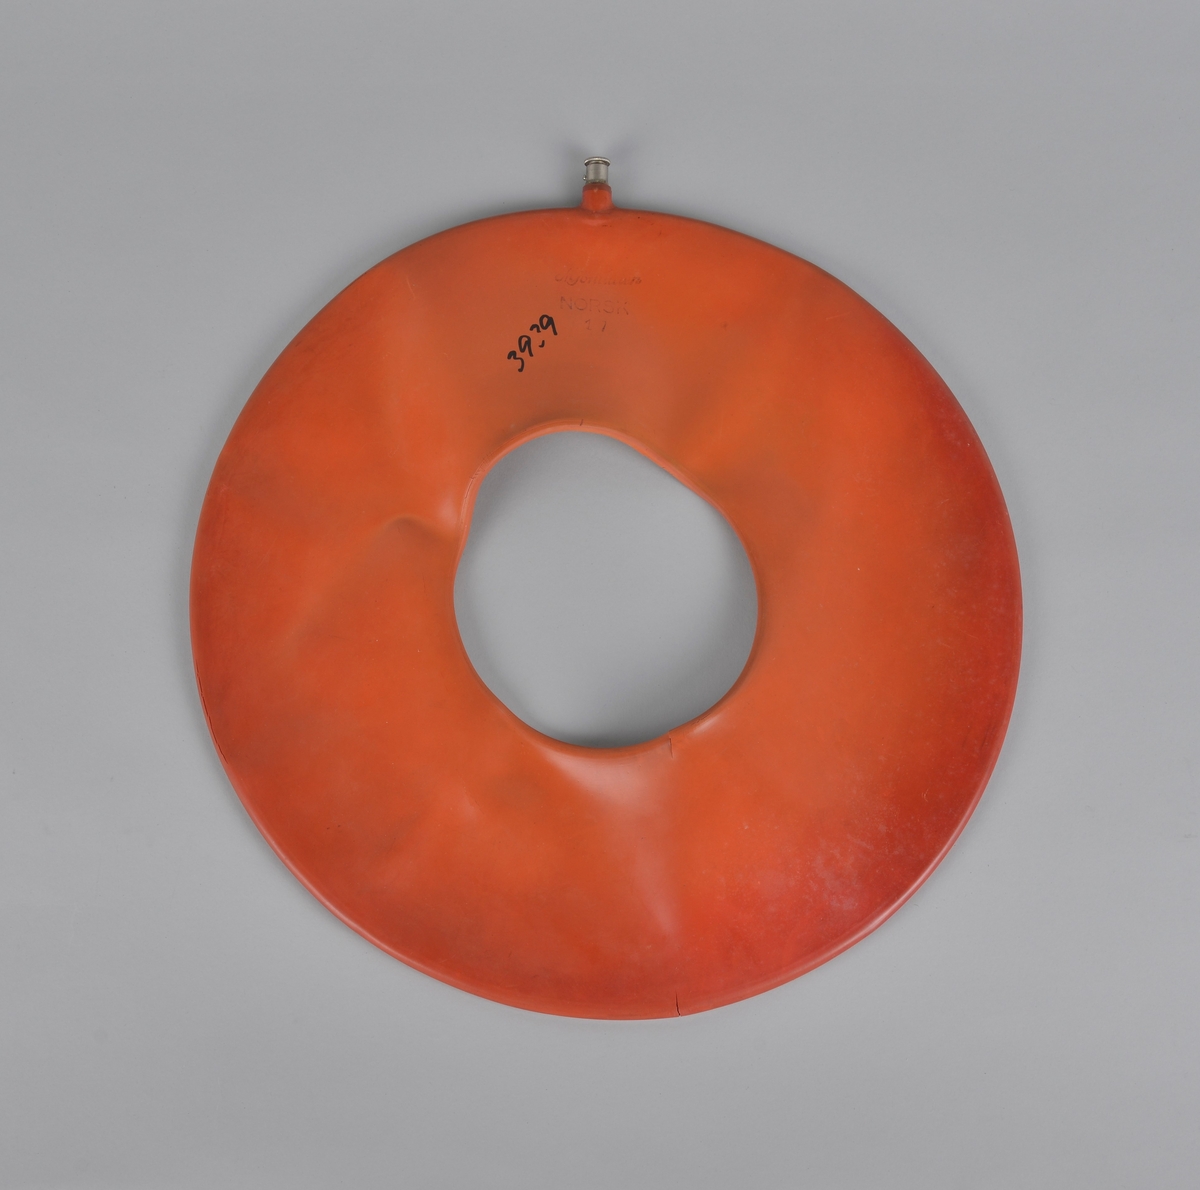 Oppblåsbar gummipute, formet som en ring. Ventil for å fylle i luft.
Brukt på Hitra Helsehus. Antatt datering 1950-årene